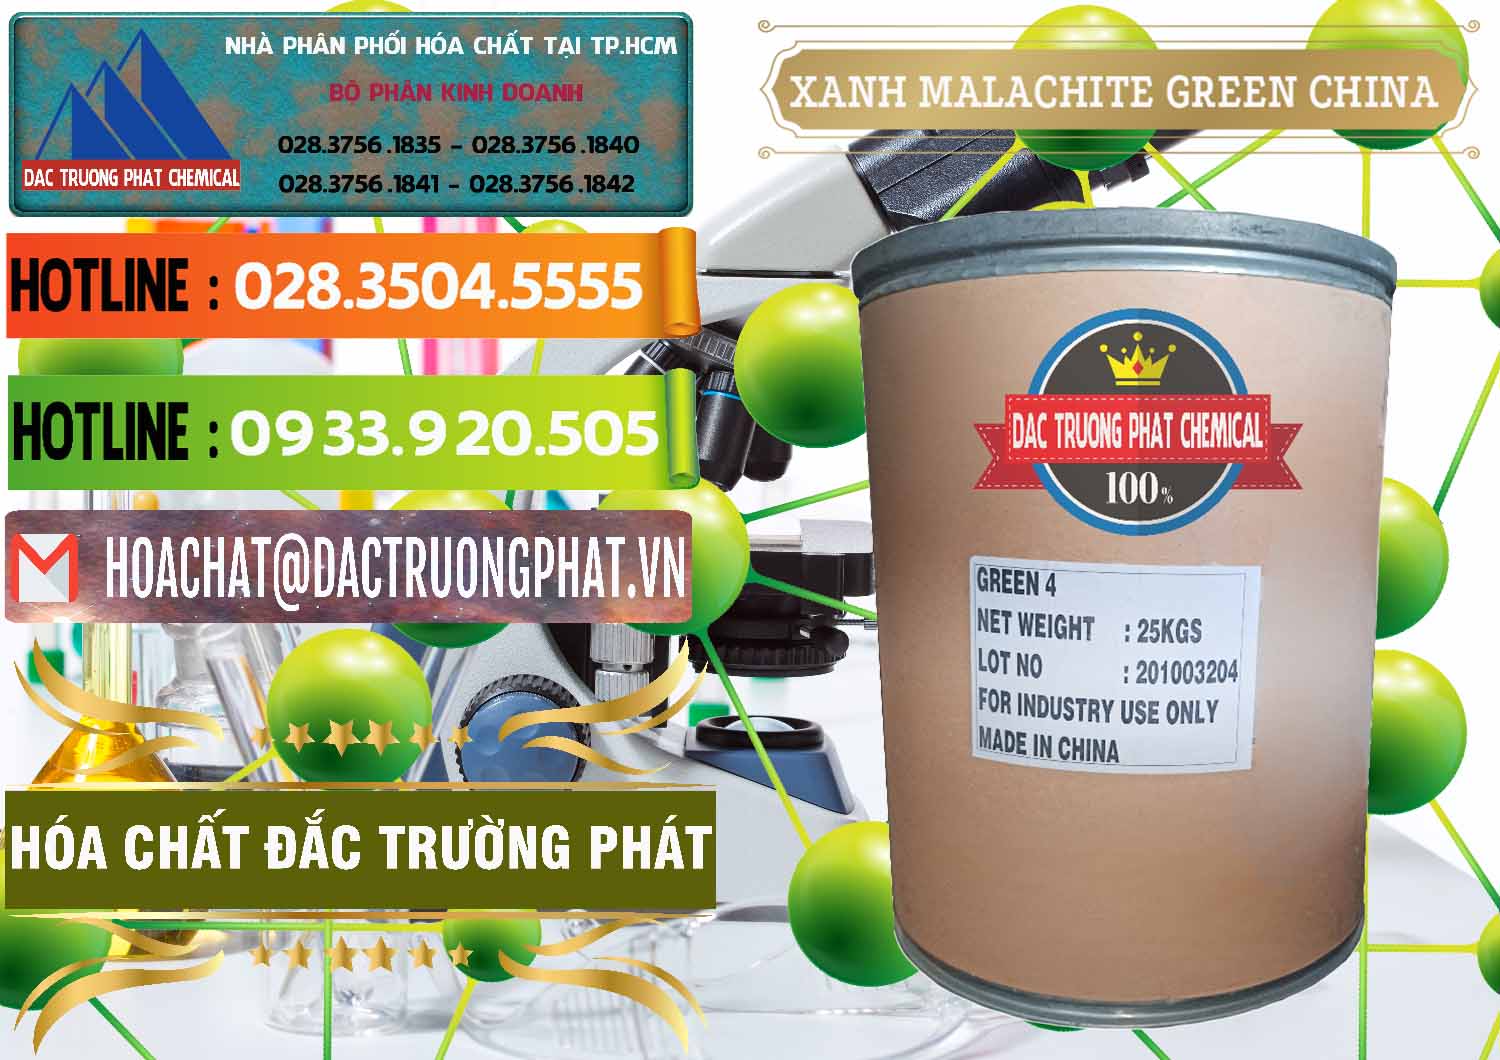 Nơi chuyên bán & phân phối Xanh Malachite Green Trung Quốc China - 0325 - Cty nhập khẩu - phân phối hóa chất tại TP.HCM - cungcaphoachat.com.vn